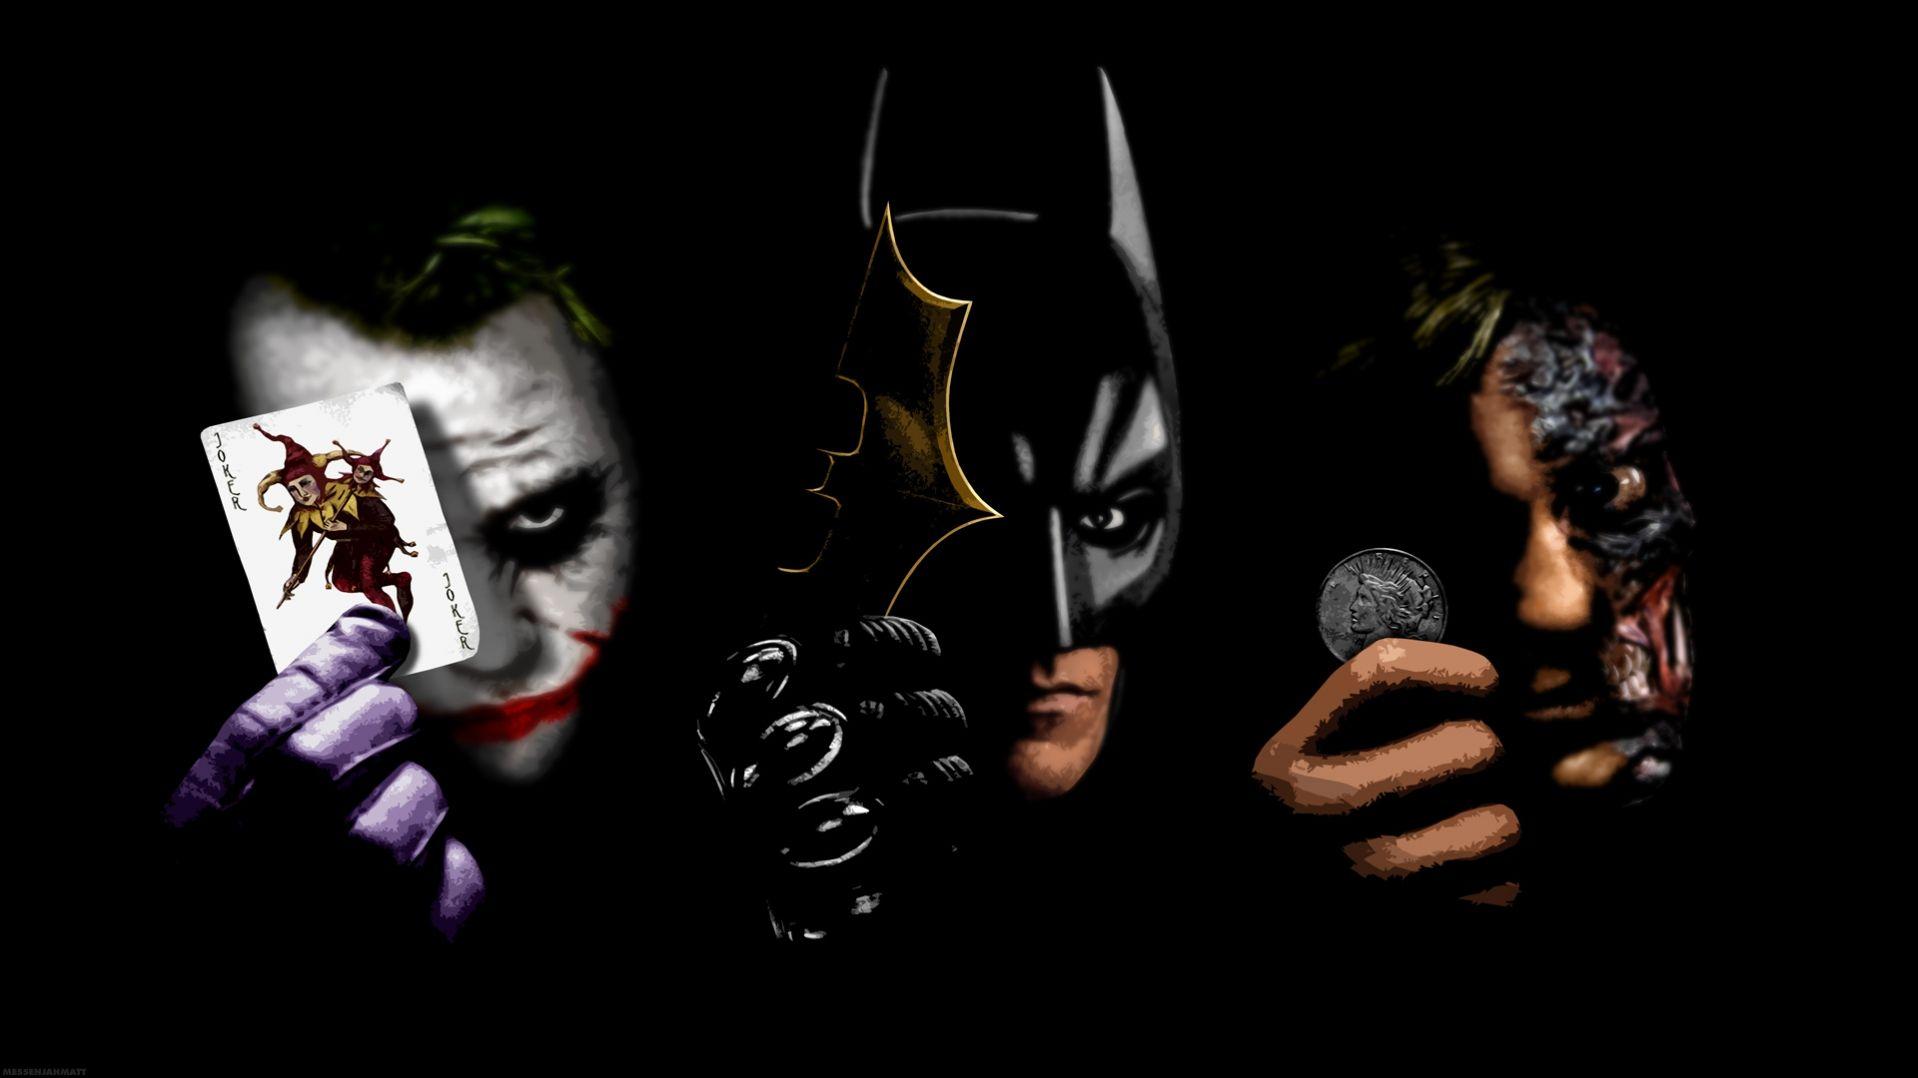 Two face , batman and joker HD Wallpaper. Batman joker wallpaper, Two face batman, Batman wallpaper